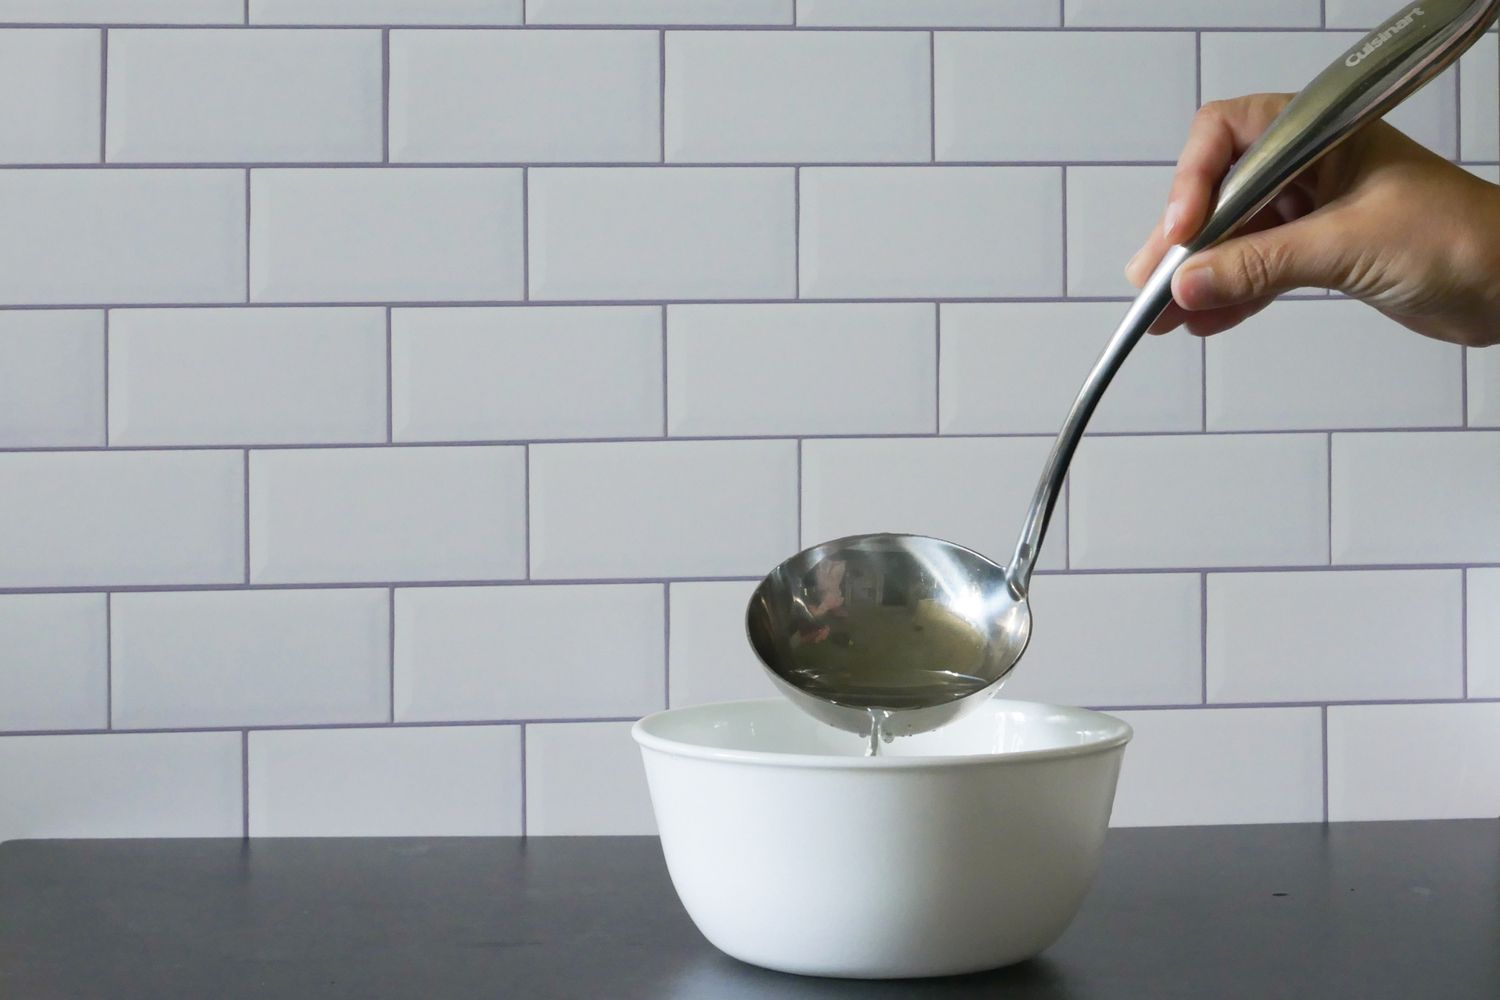 用长柄勺把水倒进碗里，演示碗的形状。